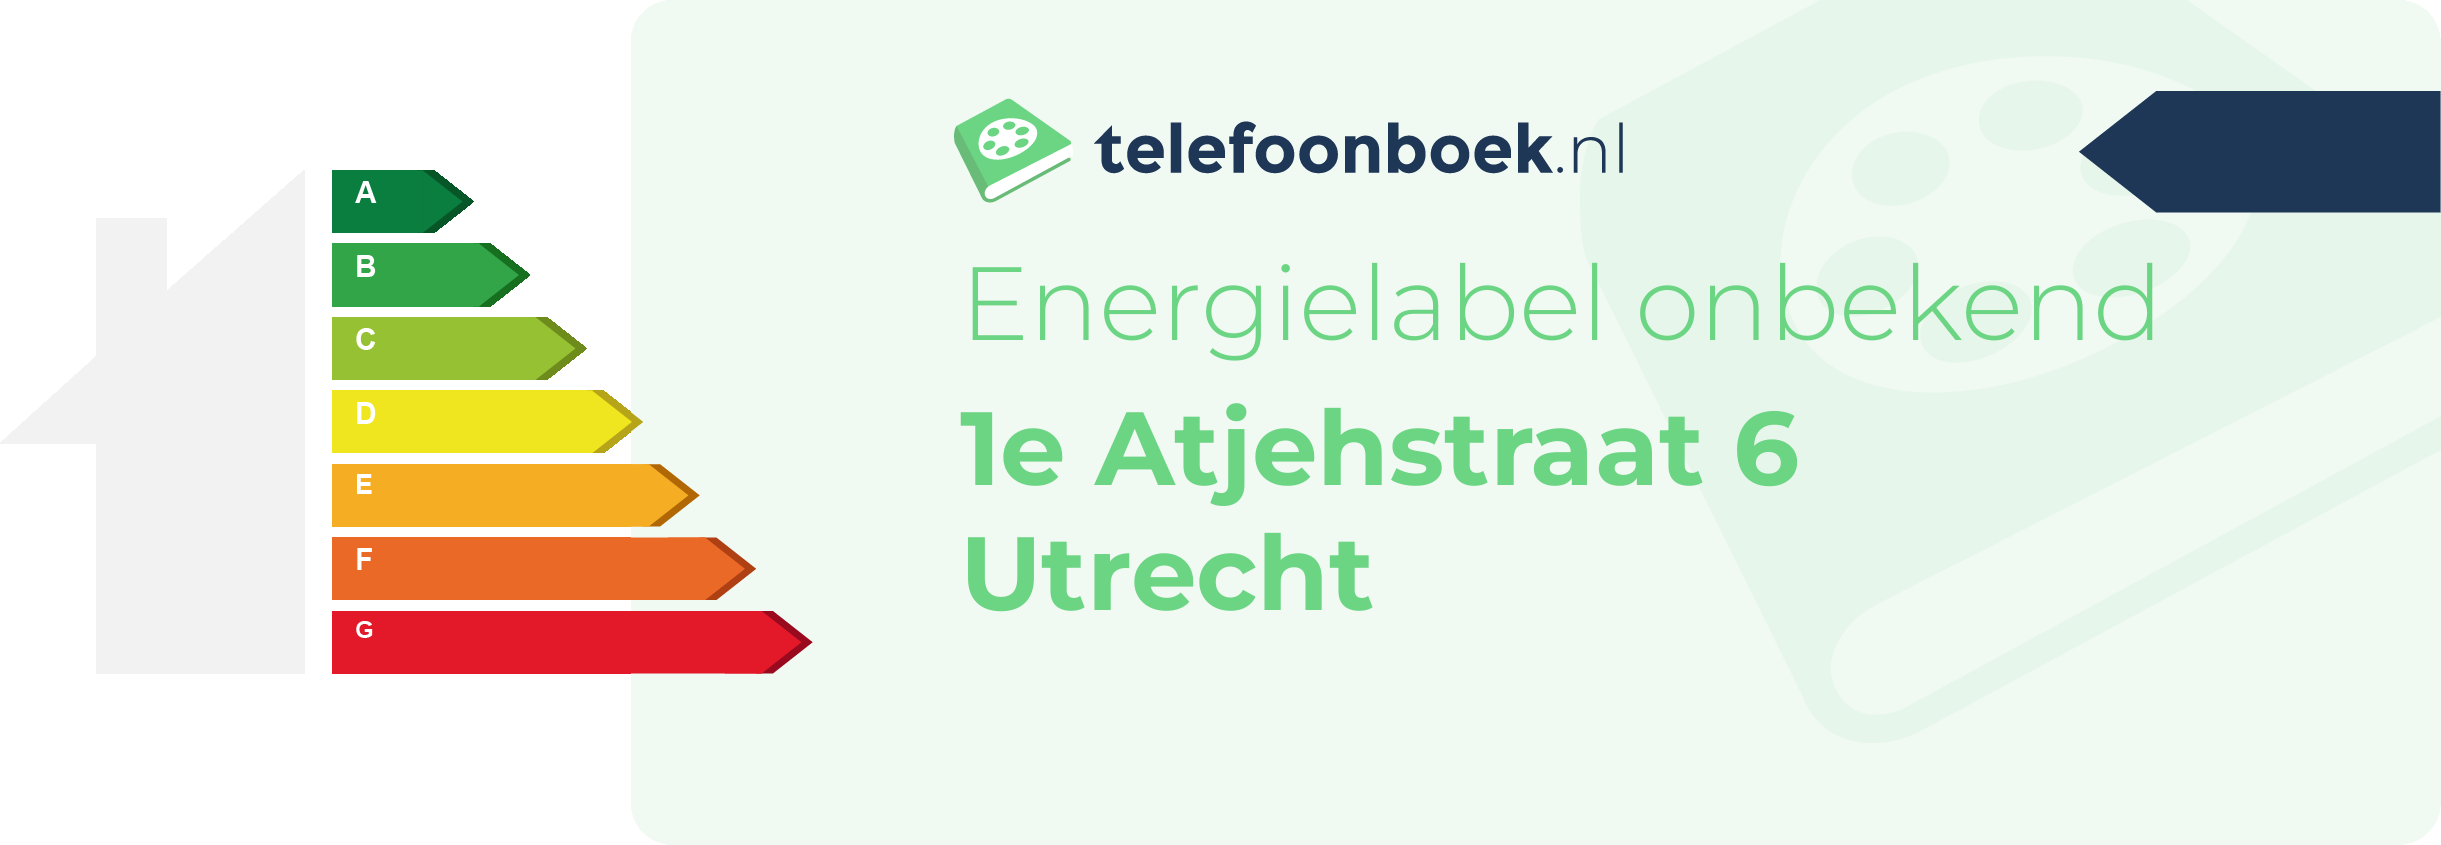 Energielabel 1e Atjehstraat 6 Utrecht